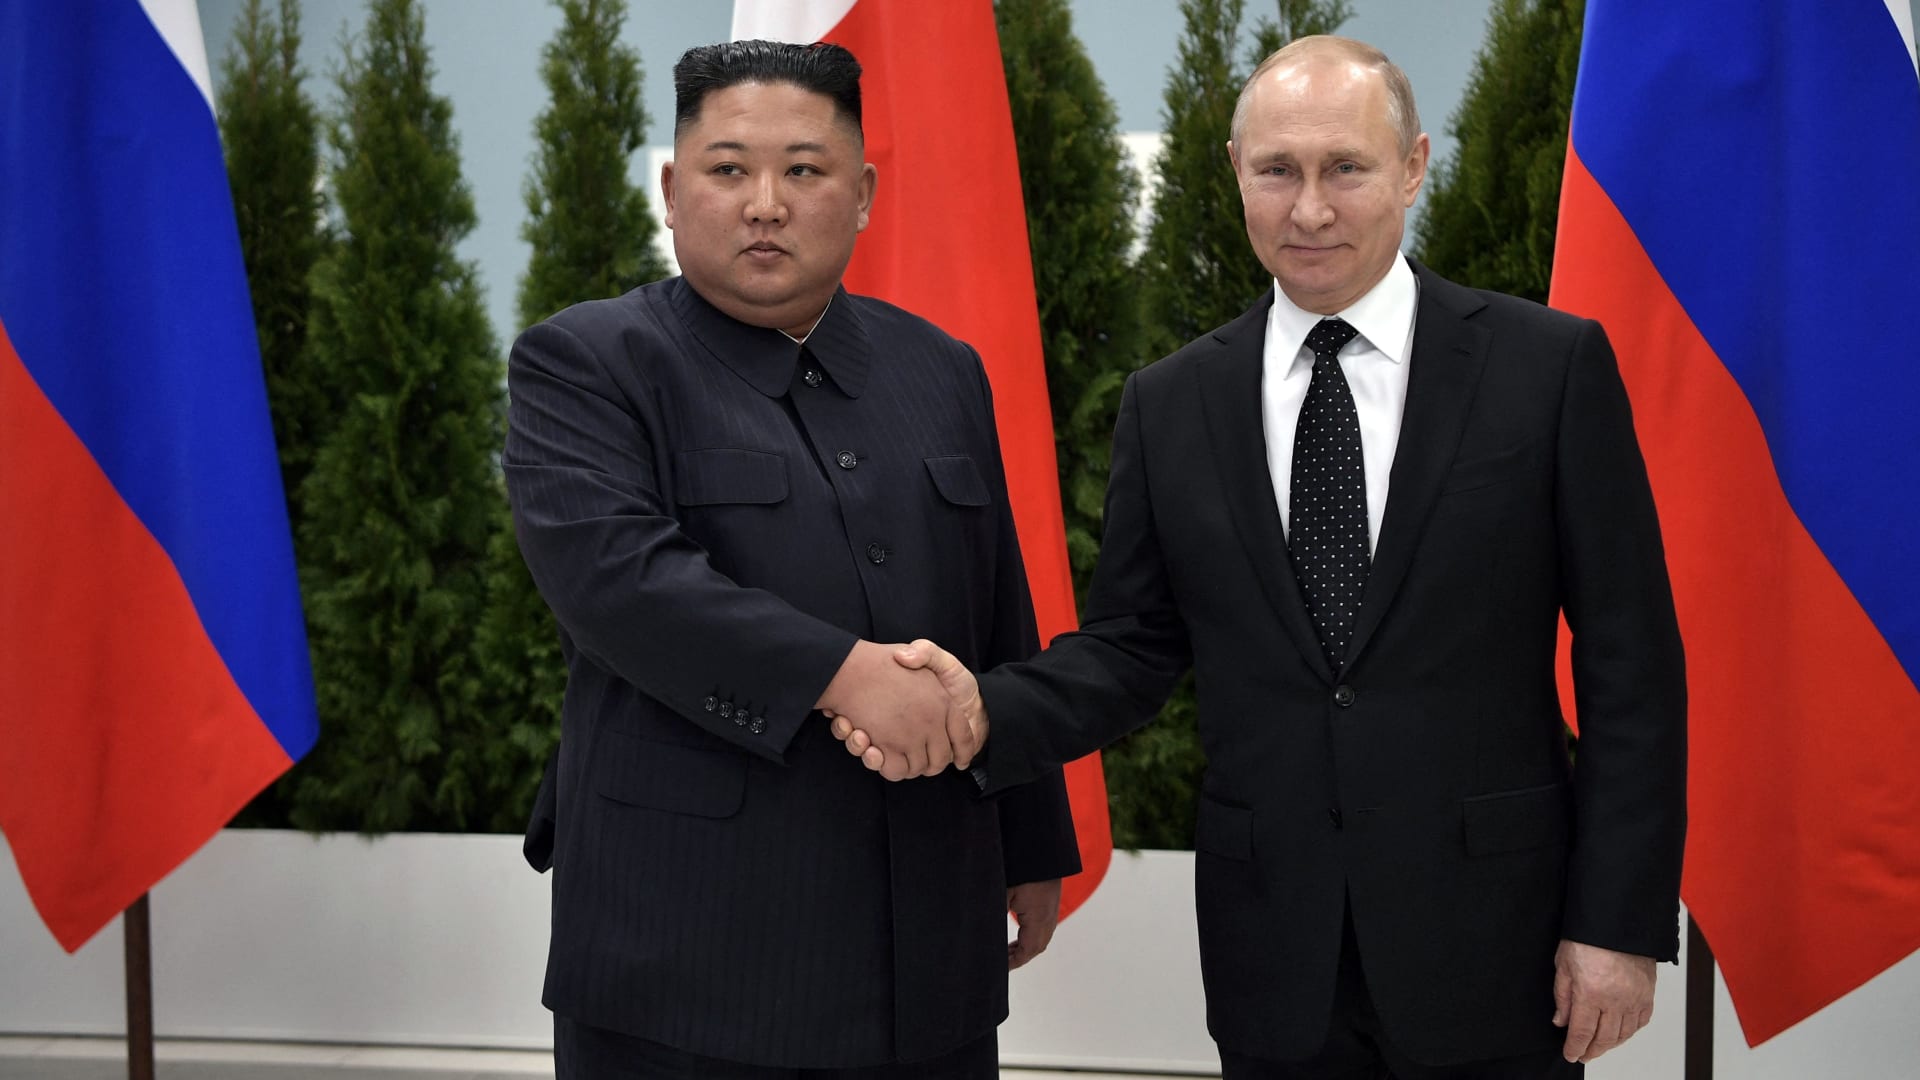 صورة أرشيفية للقاء سابق بين الرئيس الروسي فلاديمير بوتين والزعيم الكوري الشمالي كيم جونغ أون